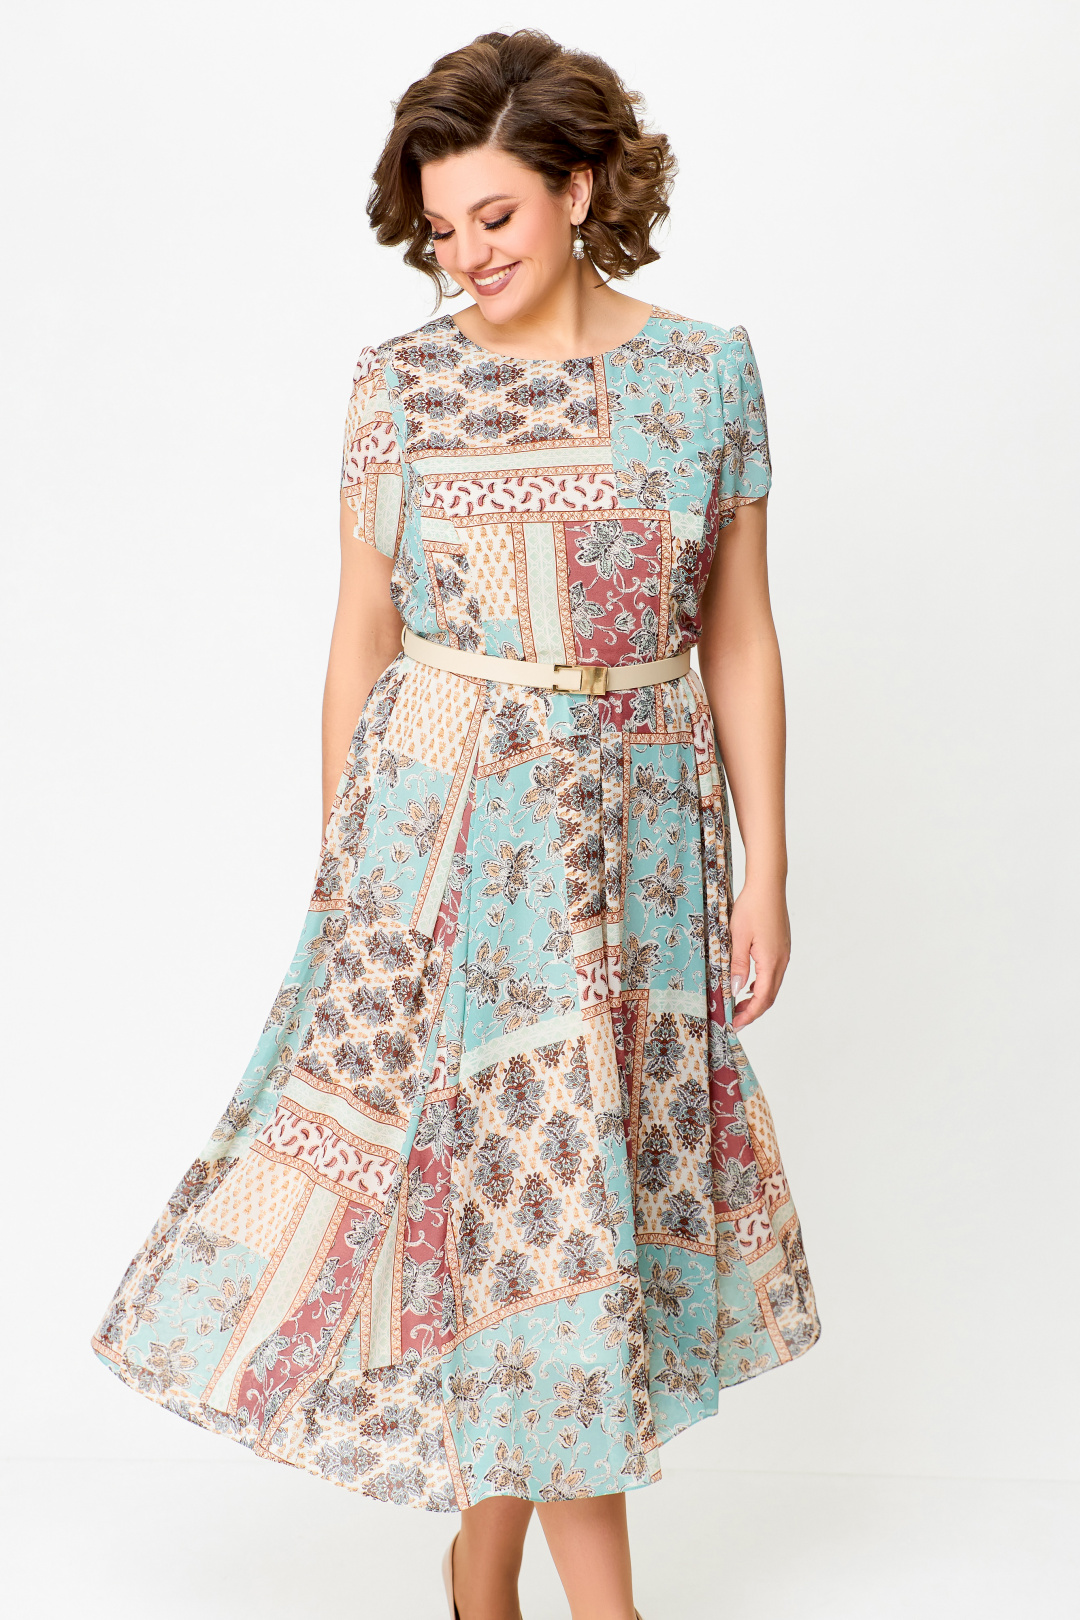 Платье Swallow 730 мятно-бежевый мультиколор